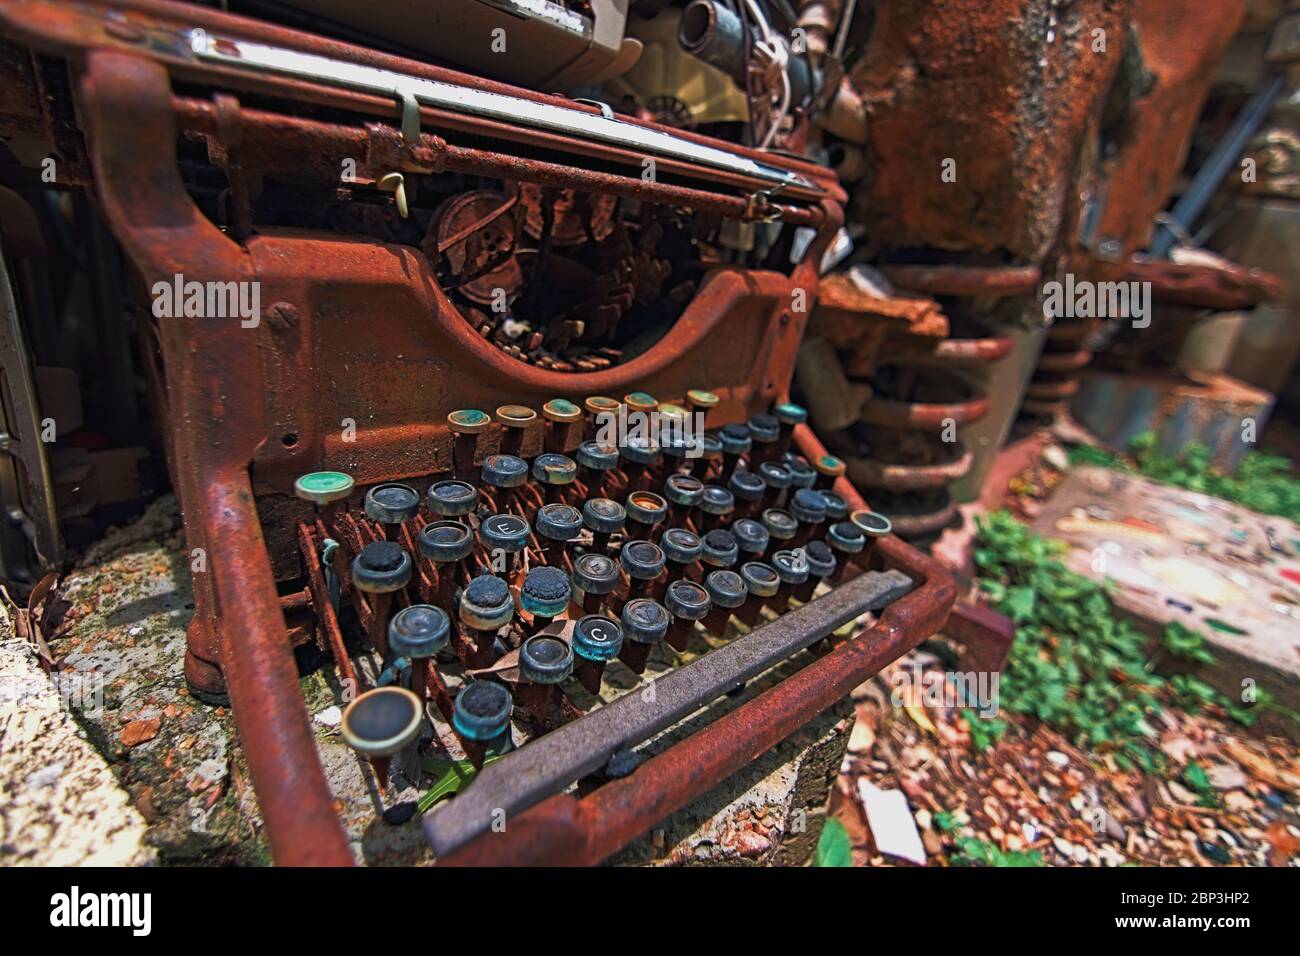 La machine à écrire rouillée classique est cassée et jetée sur le sol exposé aux éléments une relique de temps précédents. Partie d'une installation d'art Cathédrale de J Banque D'Images